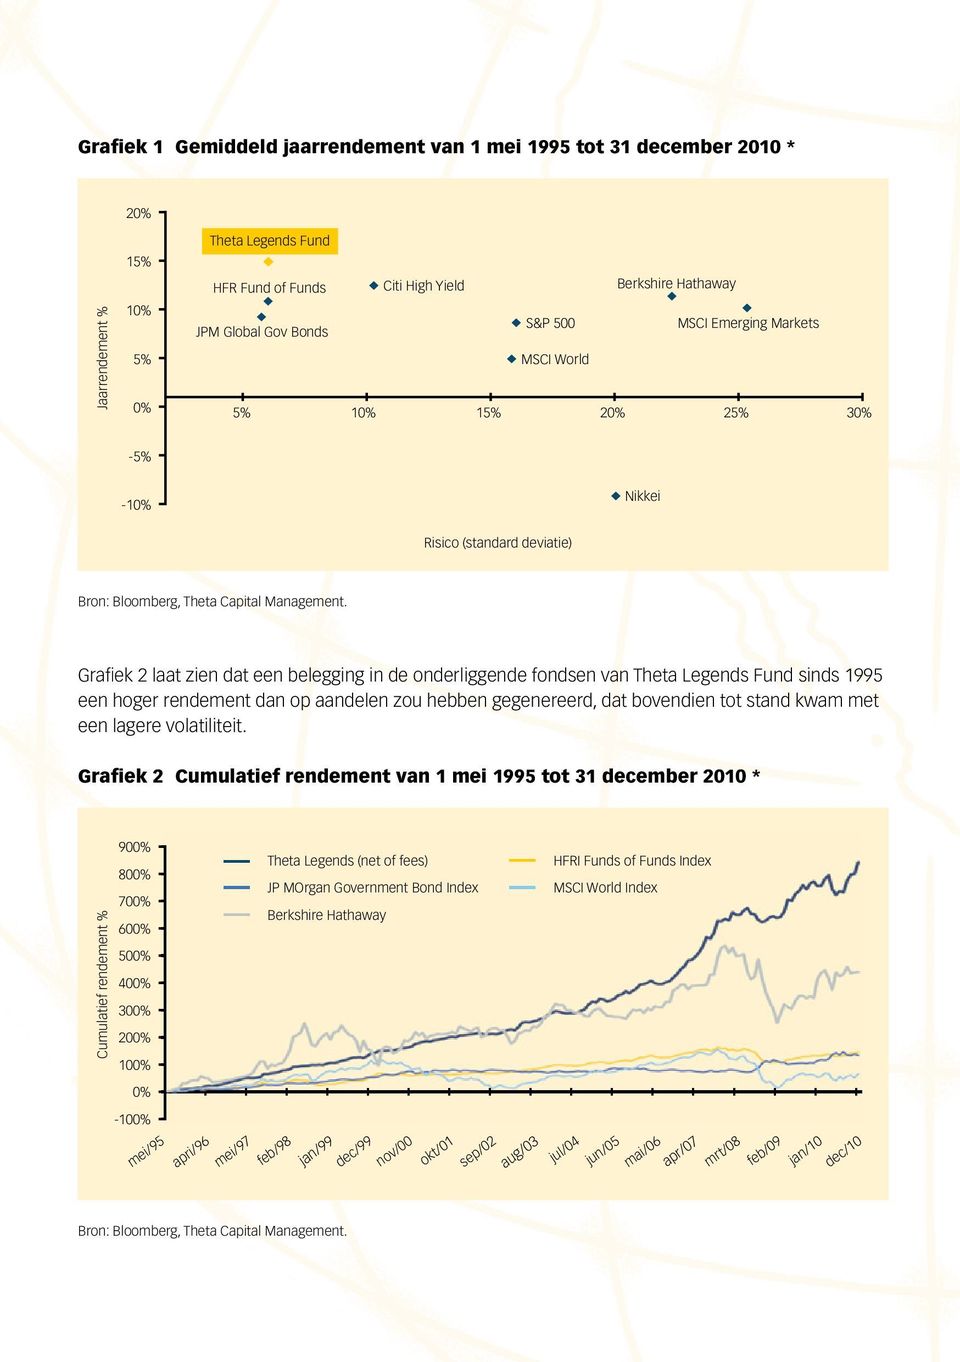 Grafiek 2 laat zien dat een belegging in de onderliggende fondsen van Theta Legends Fund sinds 1995 een hoger rendement dan op aandelen zou hebben gegenereerd, dat bovendien tot stand kwam met een